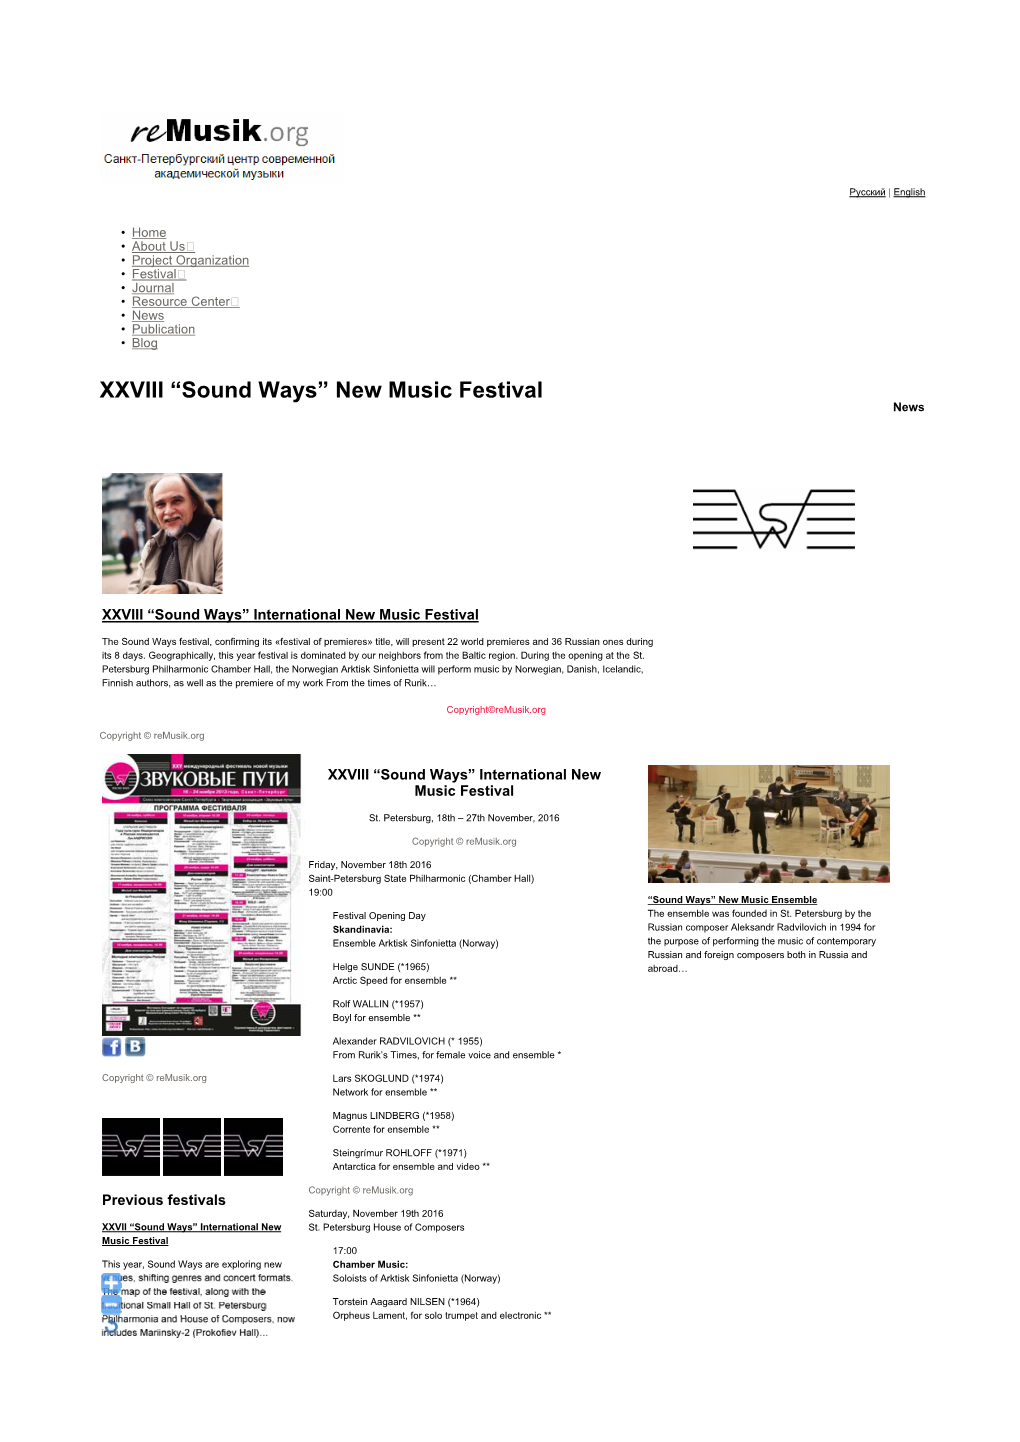 New Music Festival News